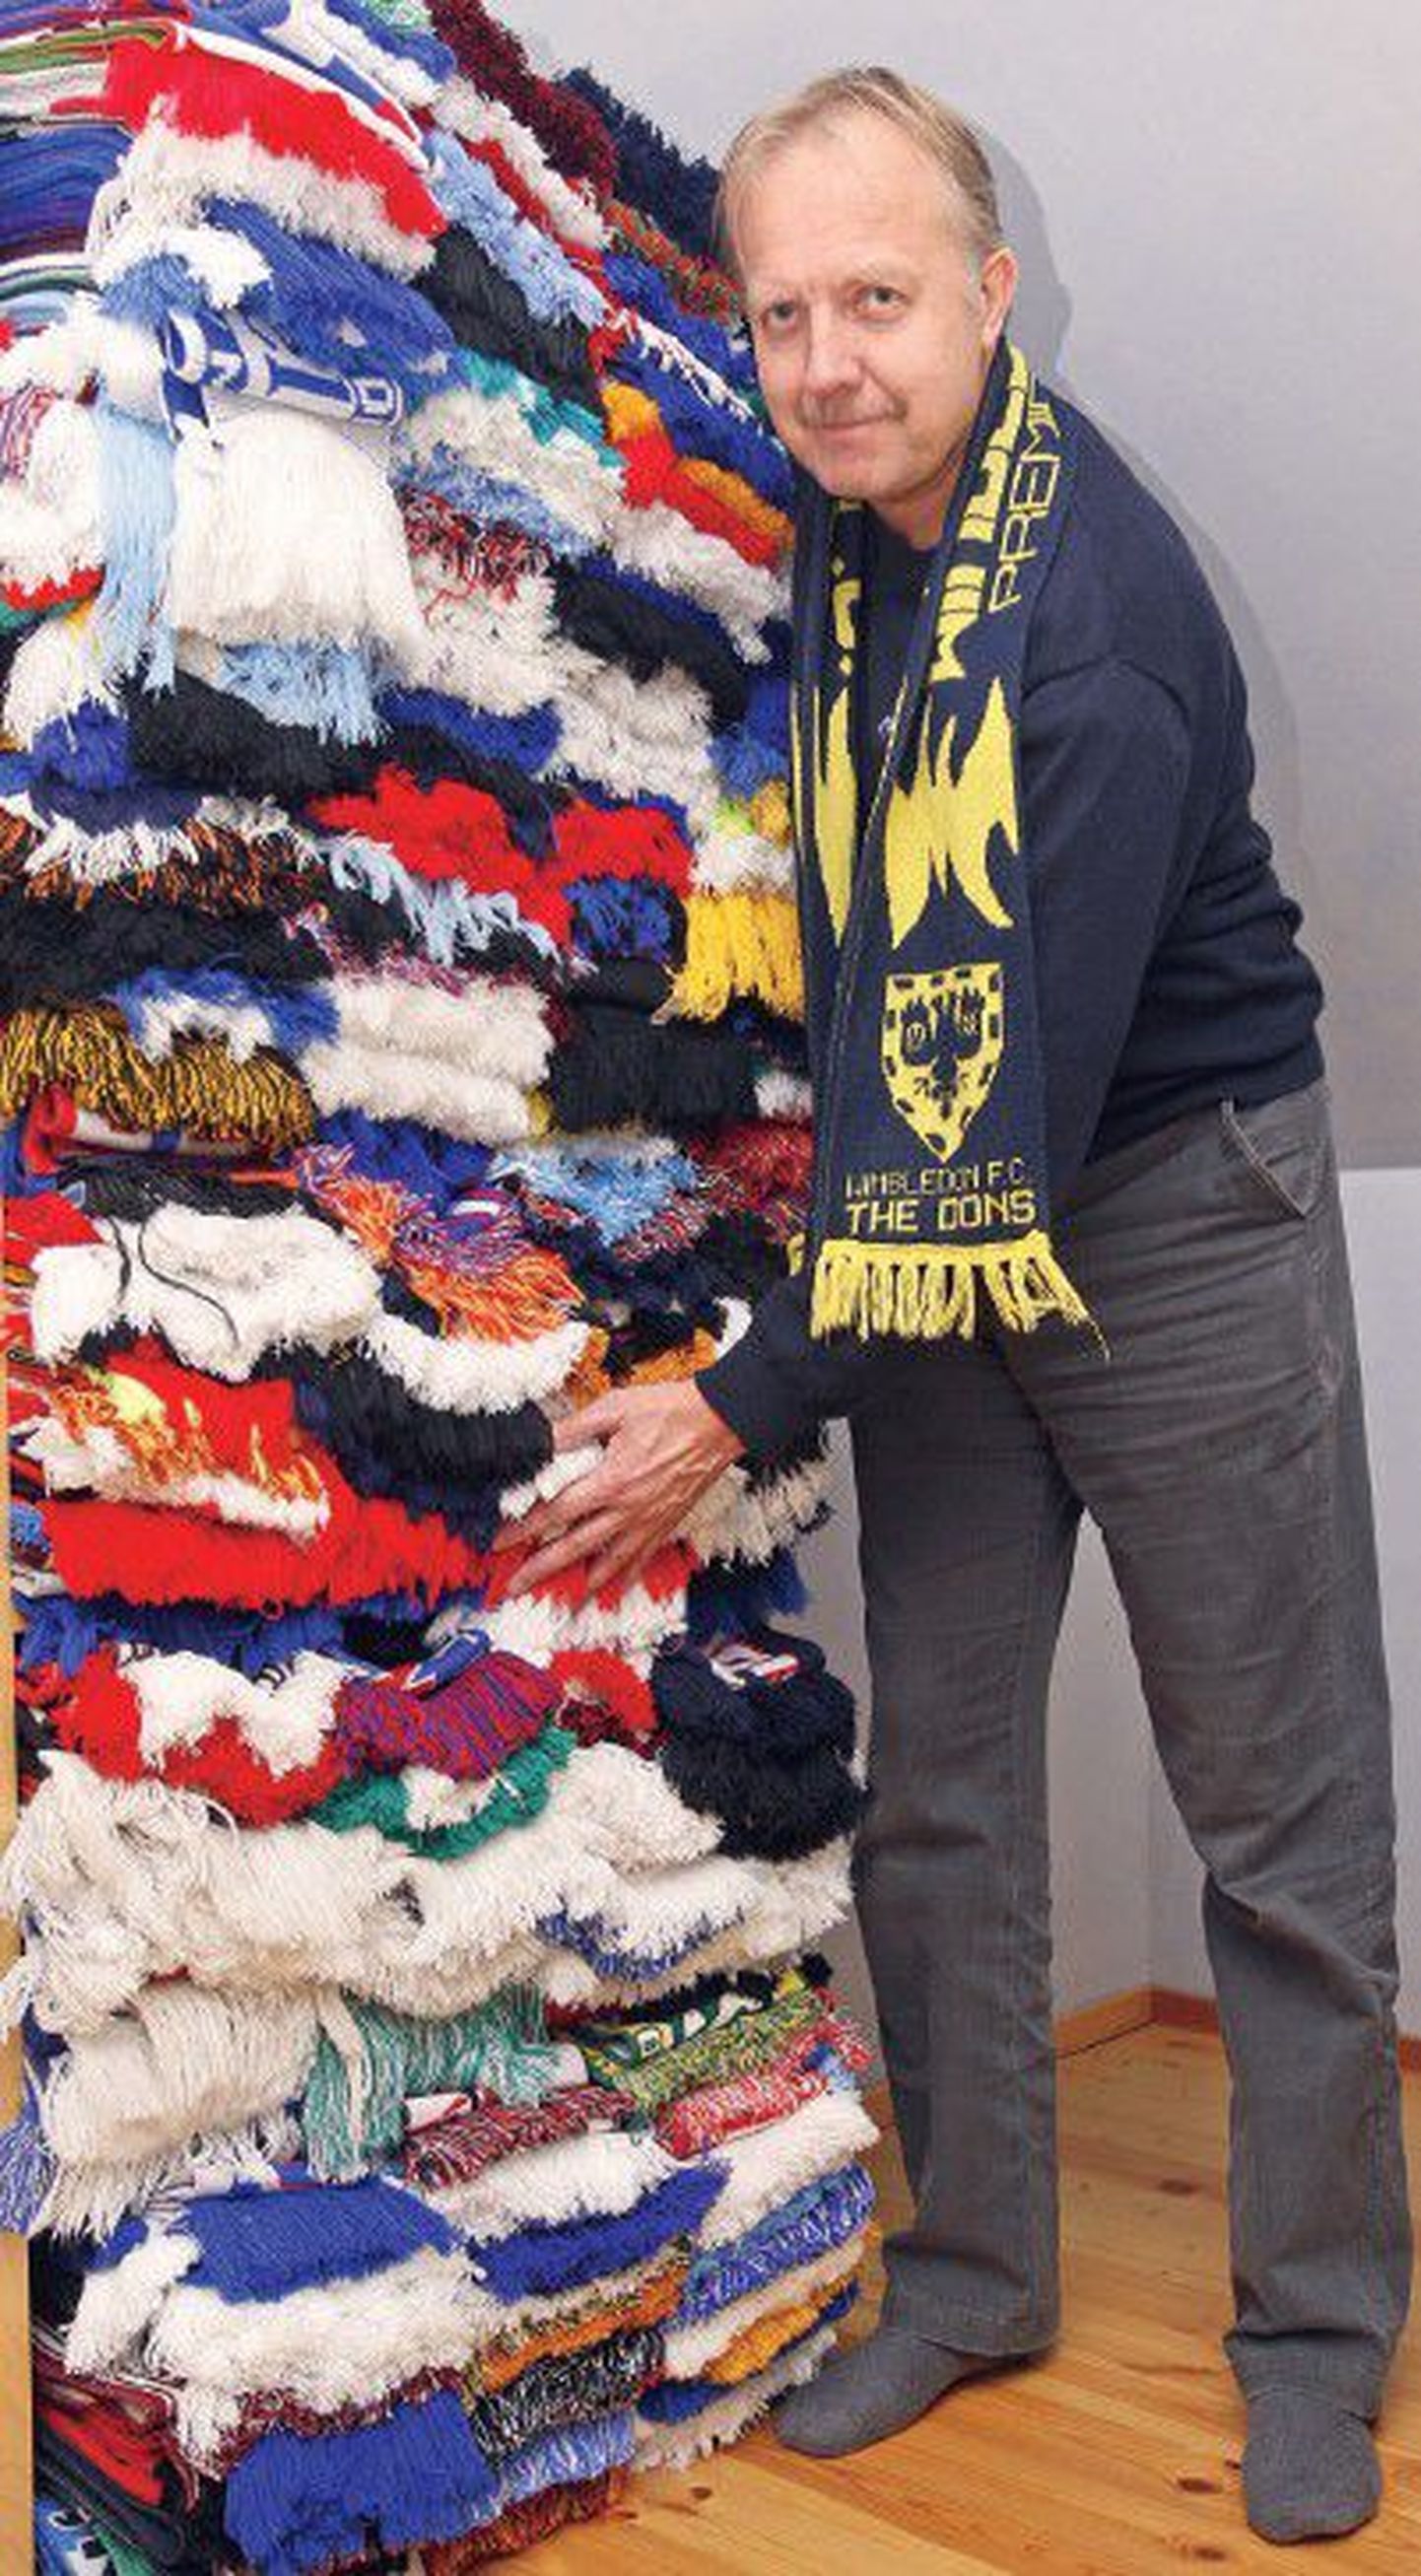 По словам футбольного фаната Антти Каска, много лет коллекционировавшего шарфы известных  футбольных клубов, его коллекция имеет и вполне практическое значение: каждый день можно наряжаться в новенький шарфик.